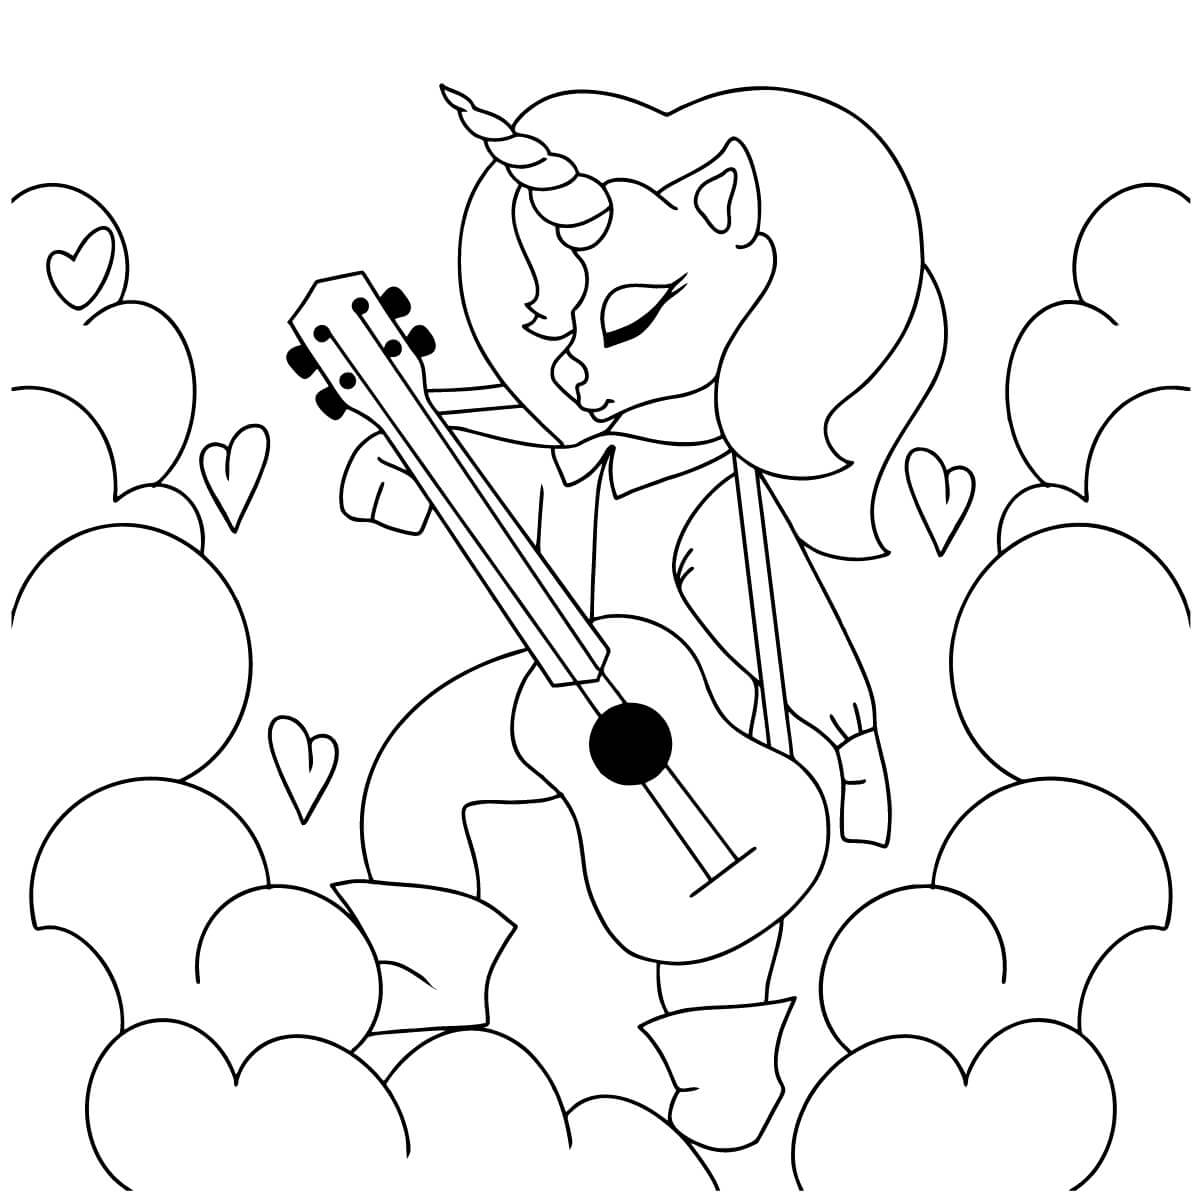 Licorne Joue de la Guitare coloring page